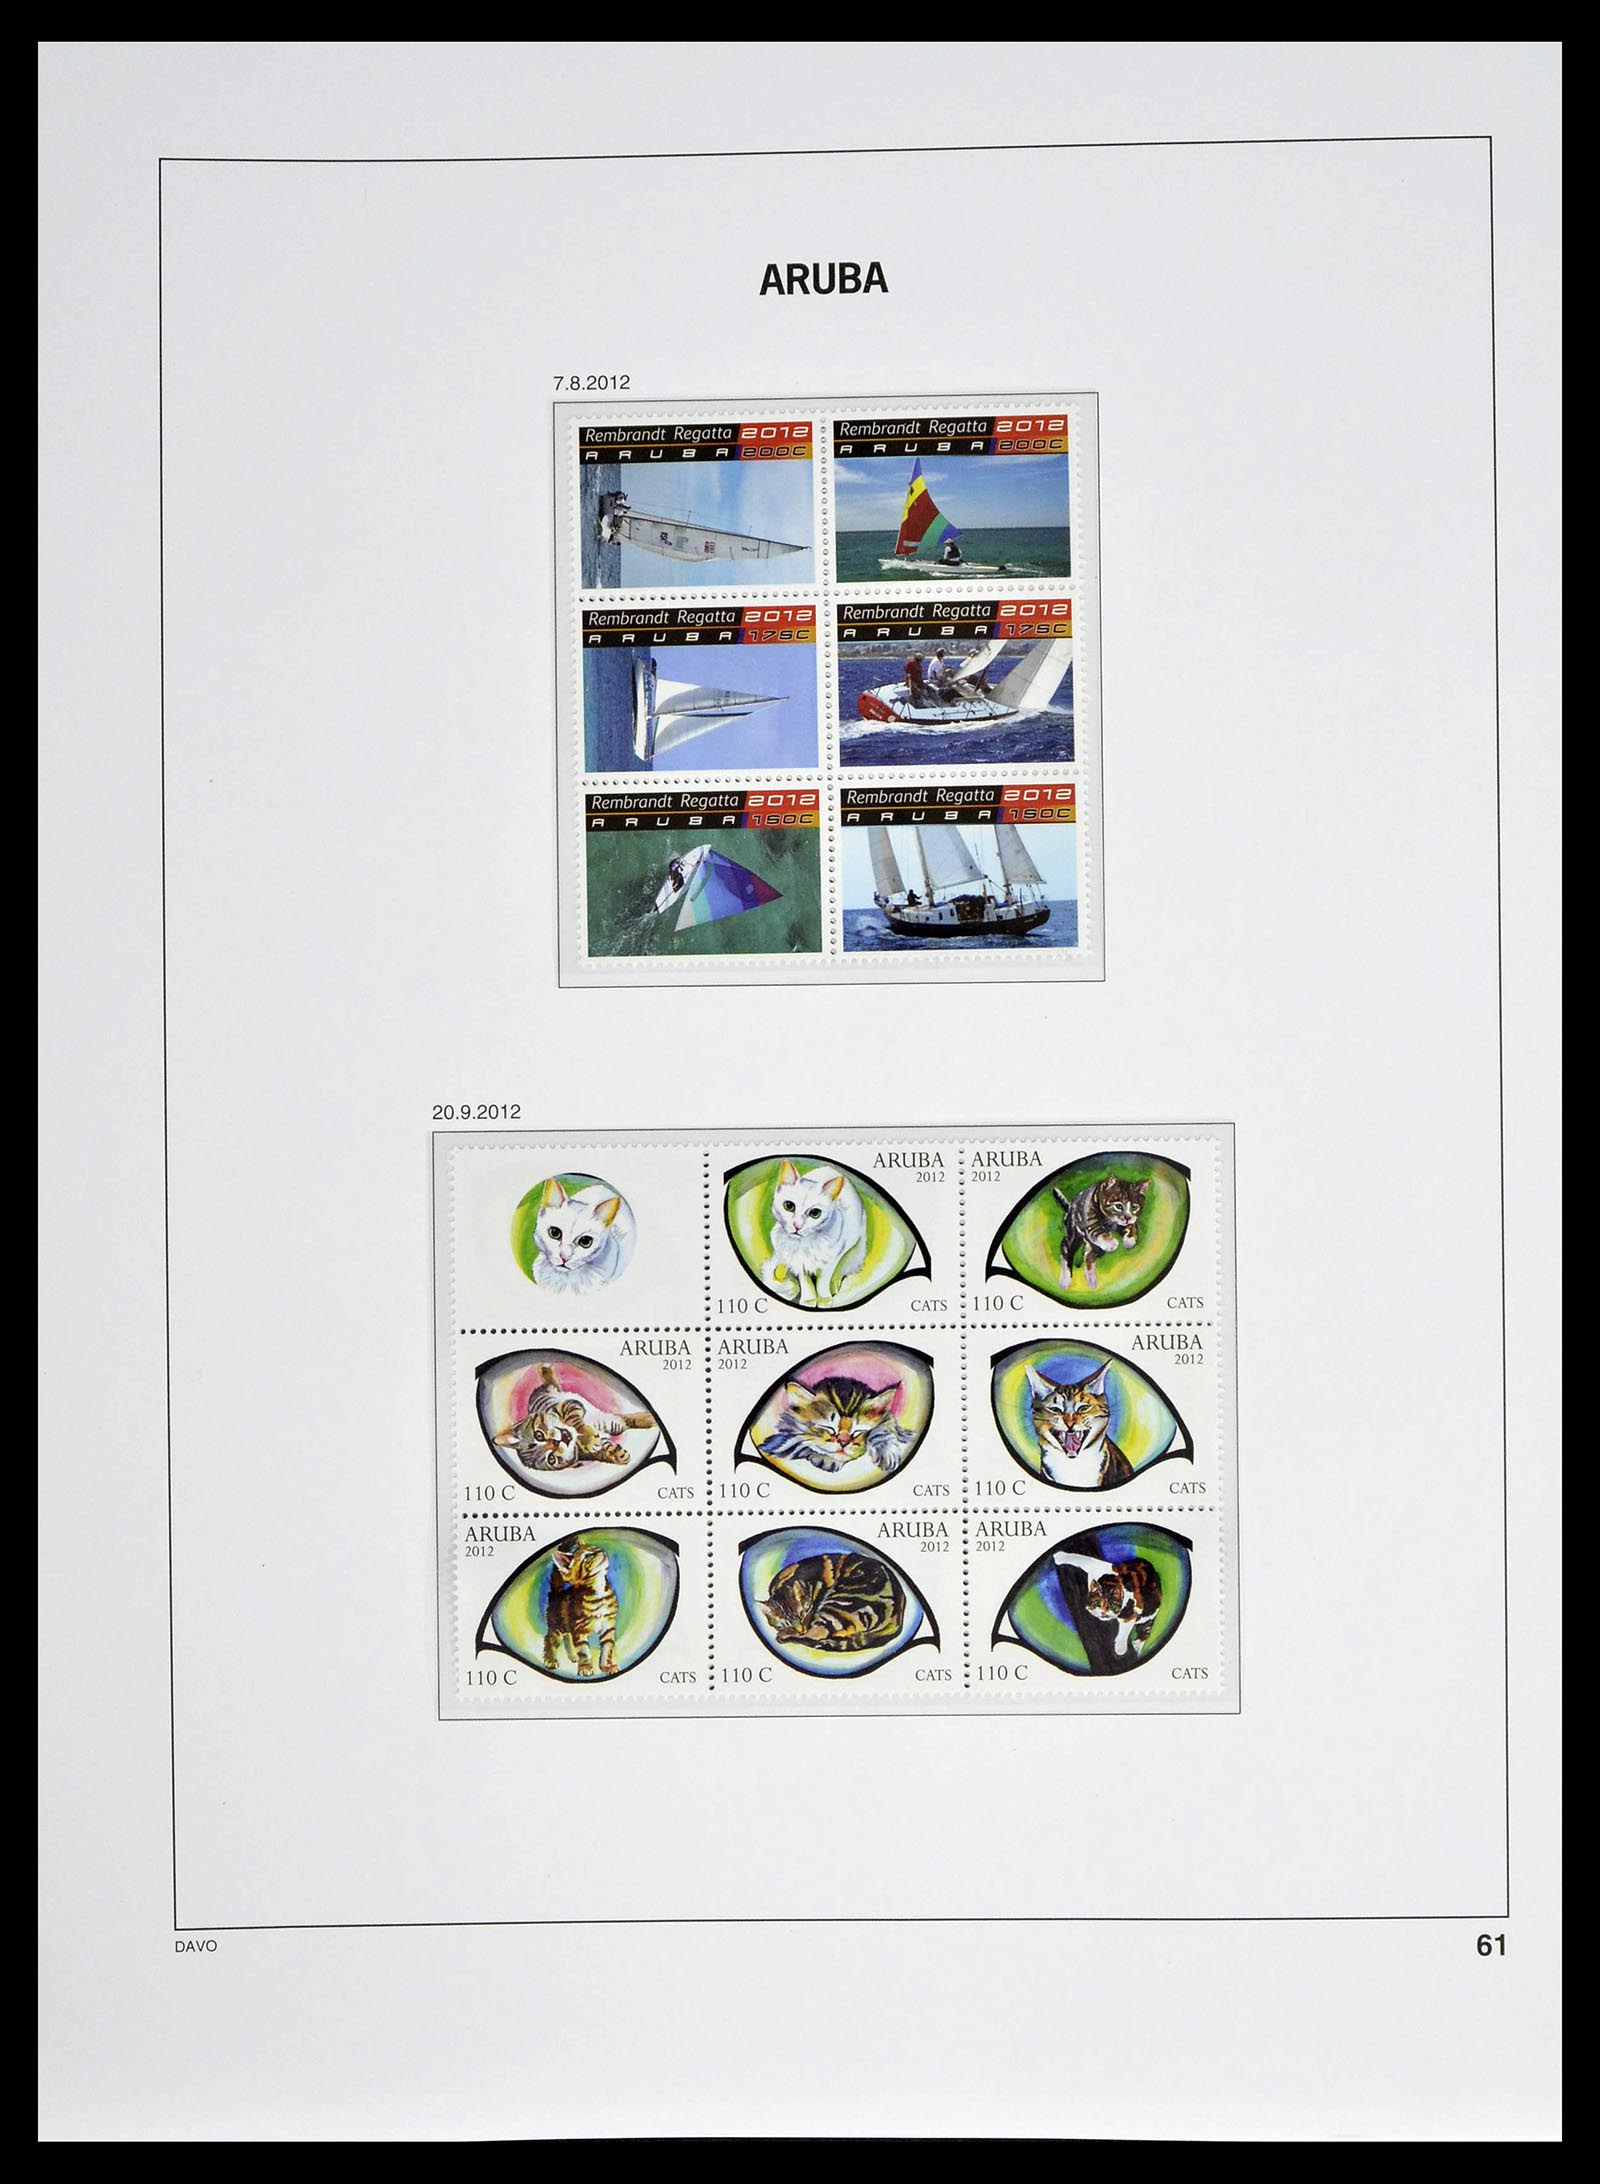 39361 0061 - Stamp collection 39361 Aruba 1986-2013.